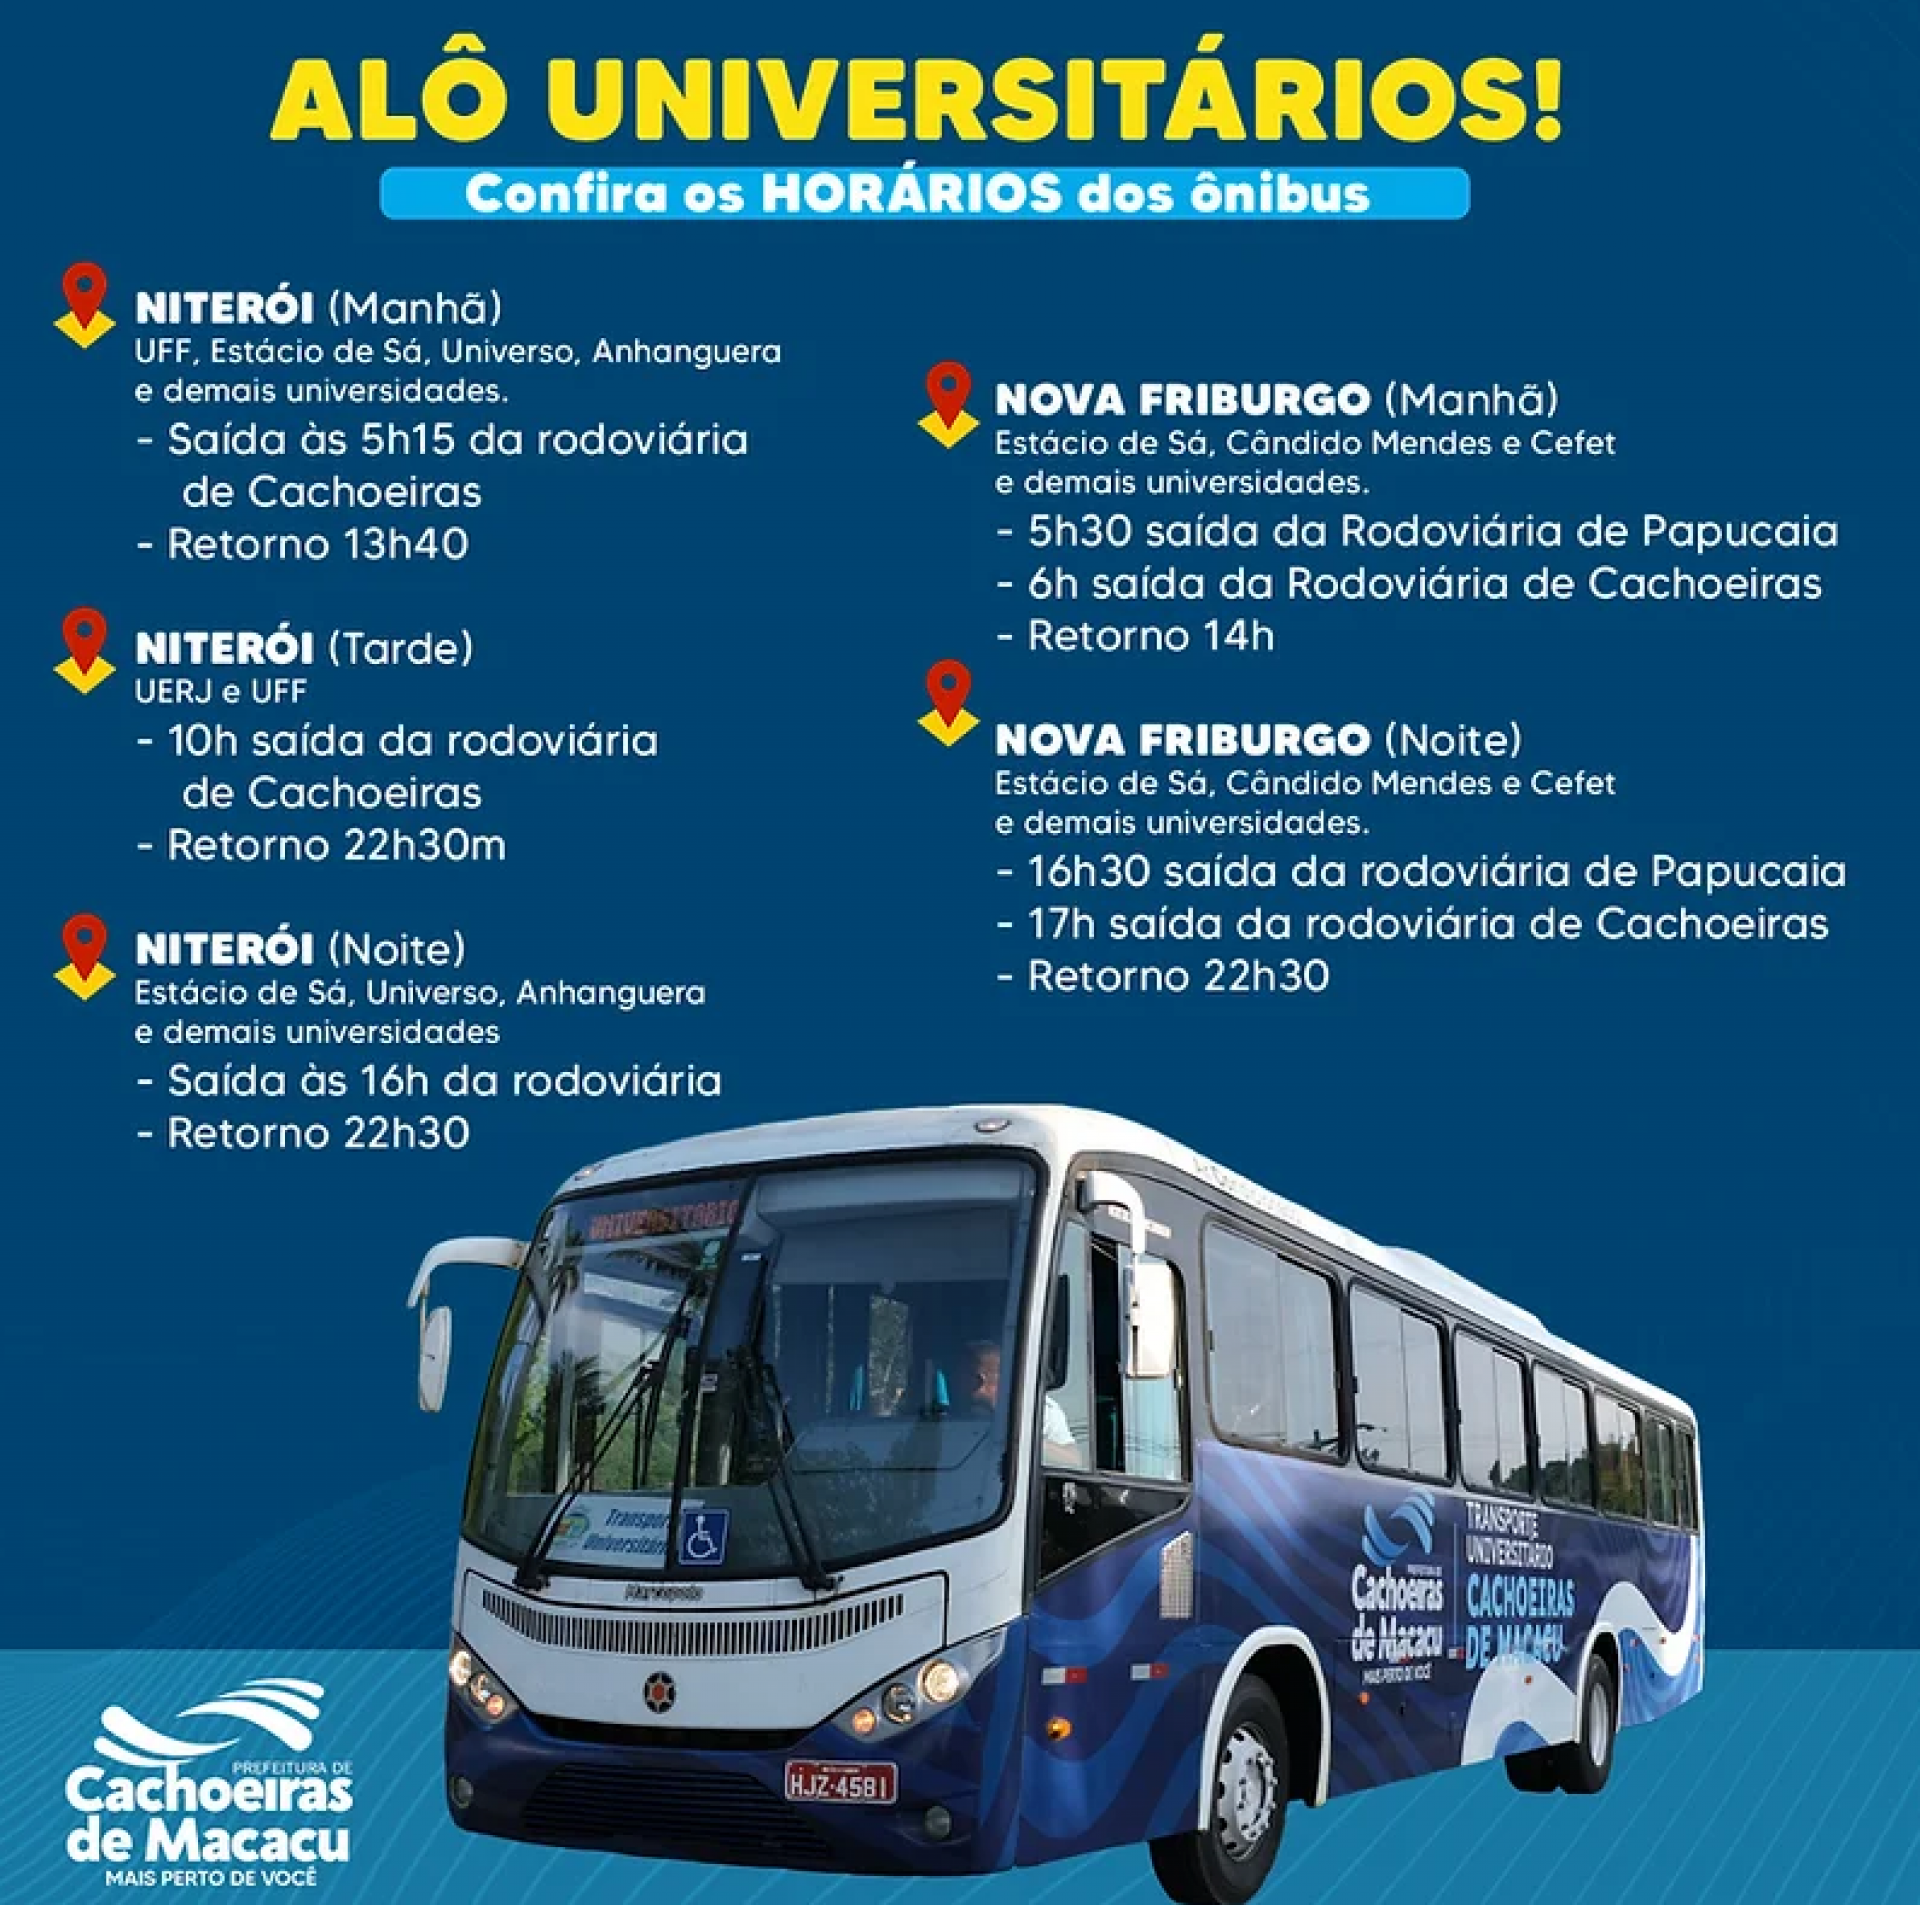 Horários do transporte universitário em Cachoeiras de Macacu - Divulgação Prefeitura de Cachoeiras de Macacu